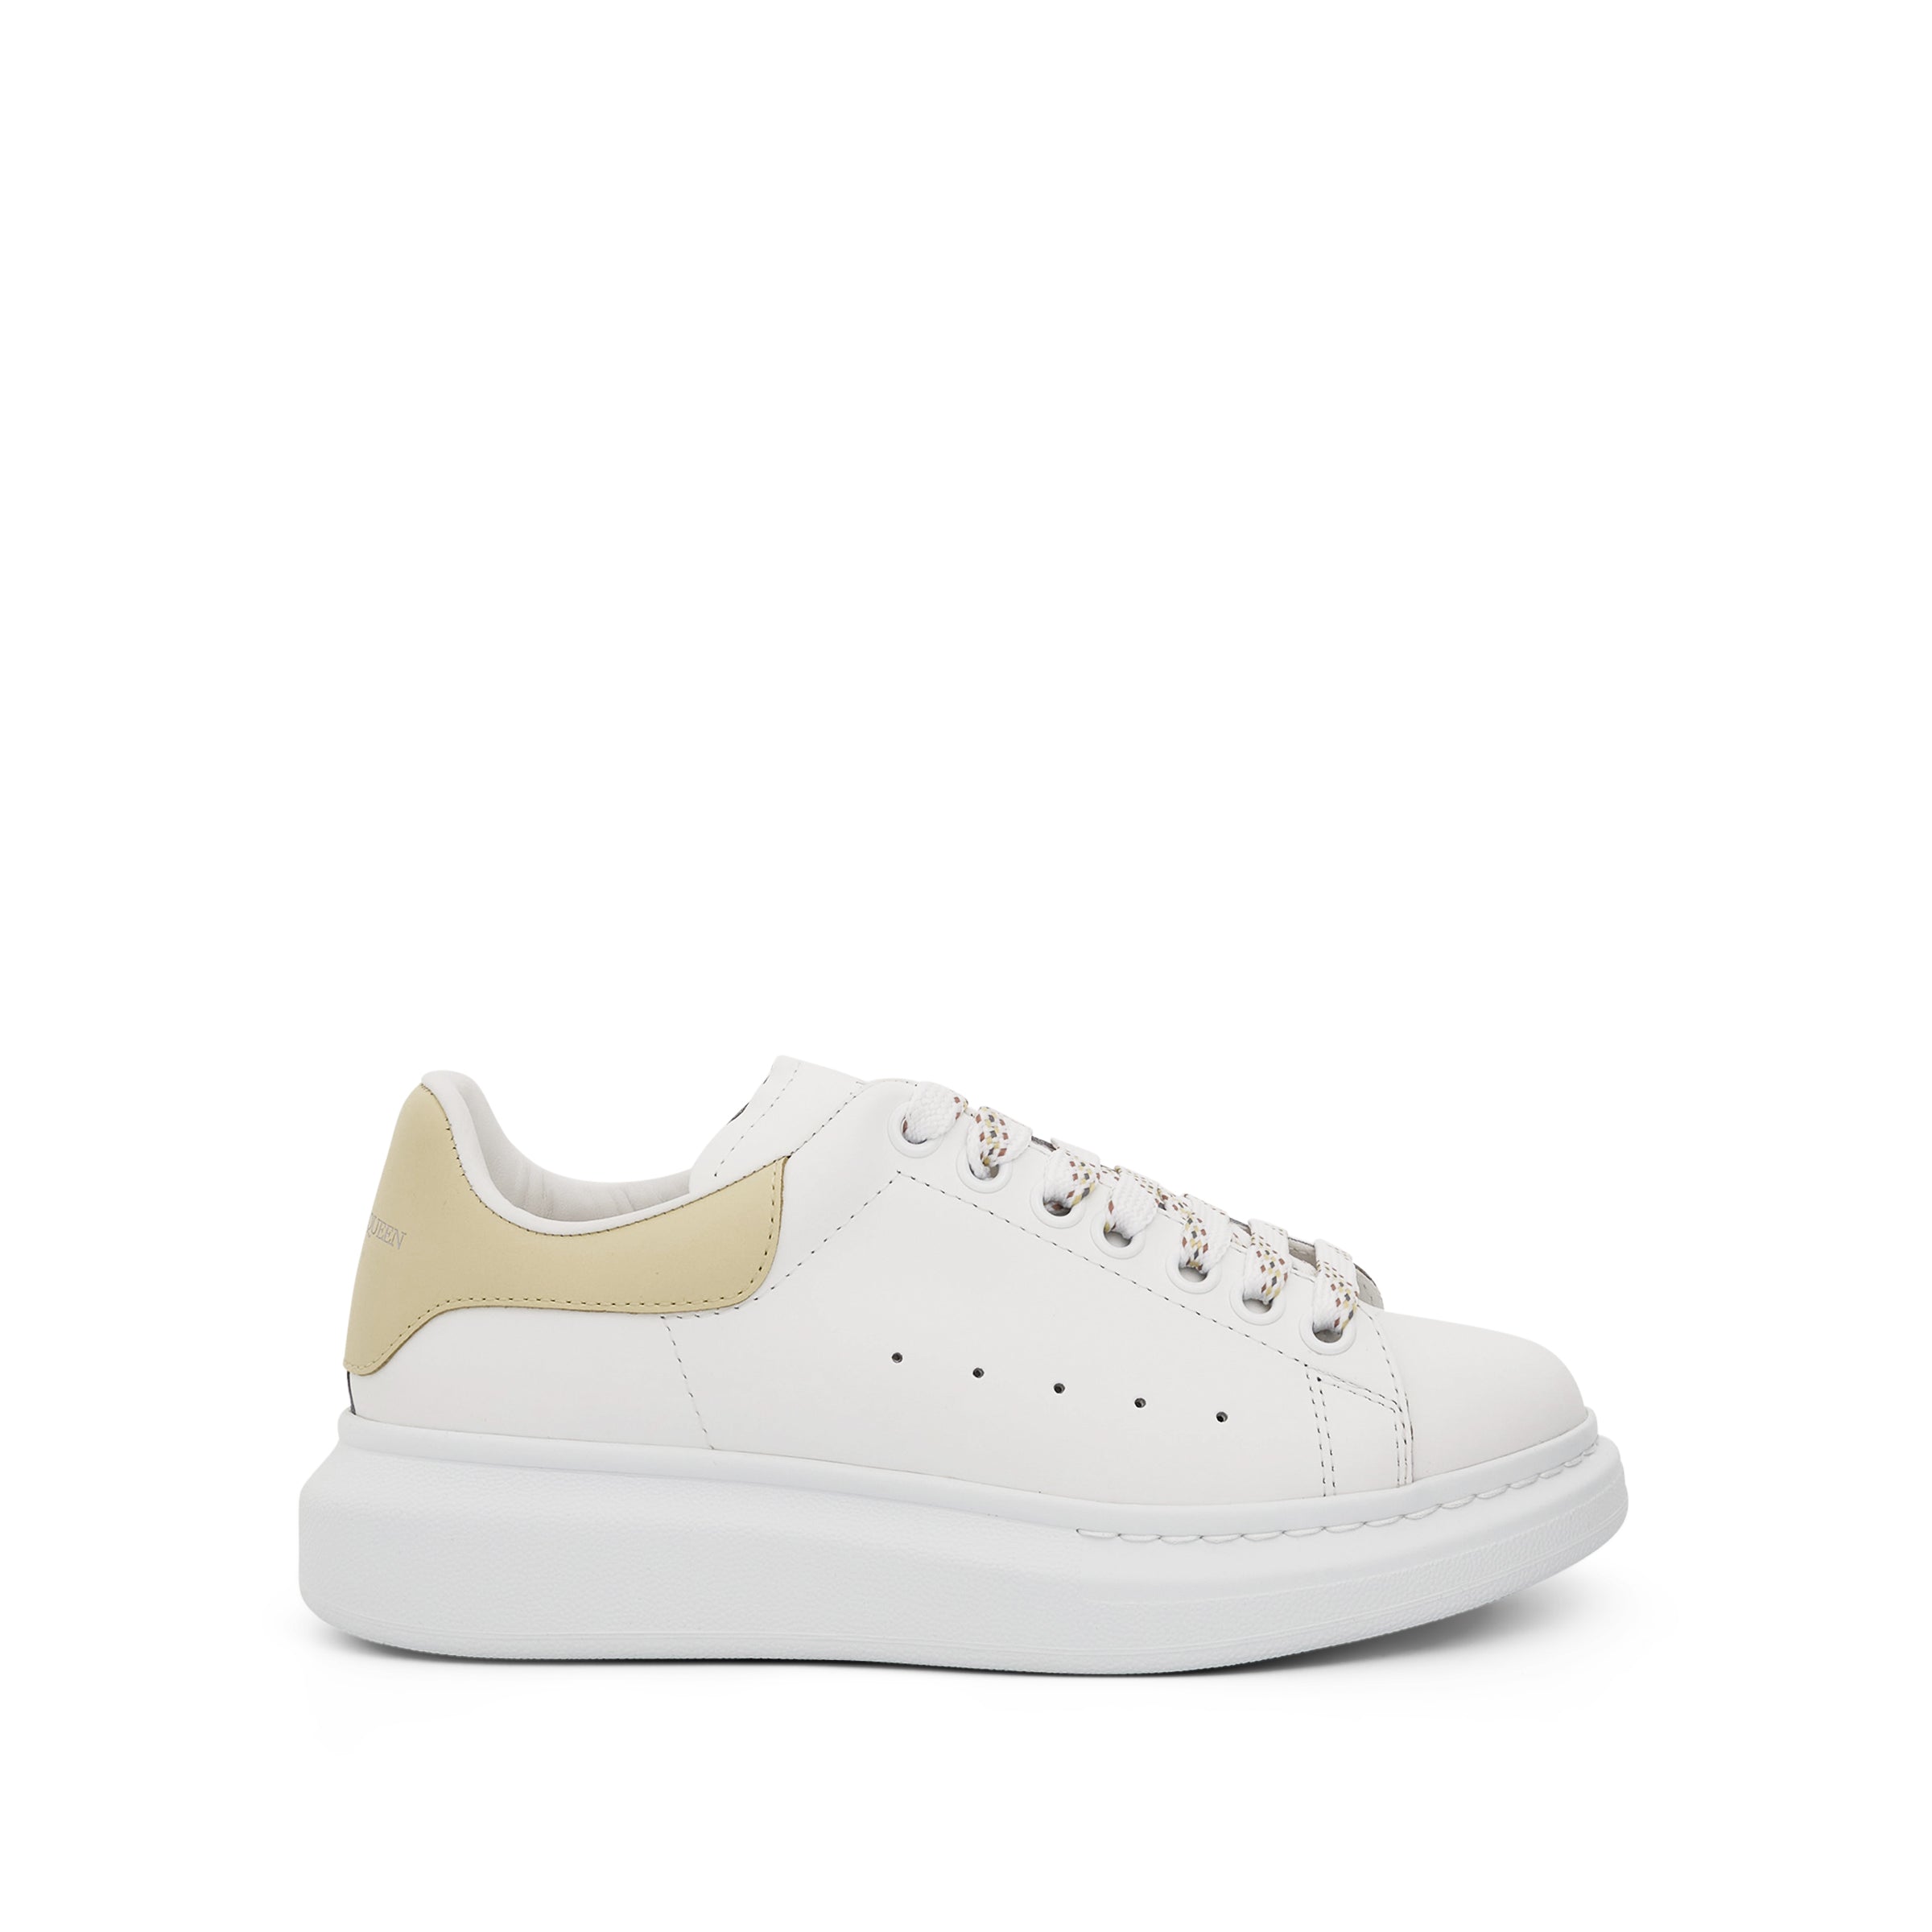 ALEXANDER McQUEEN Larry Oversized Sneaker in White/Anise – MARAIS